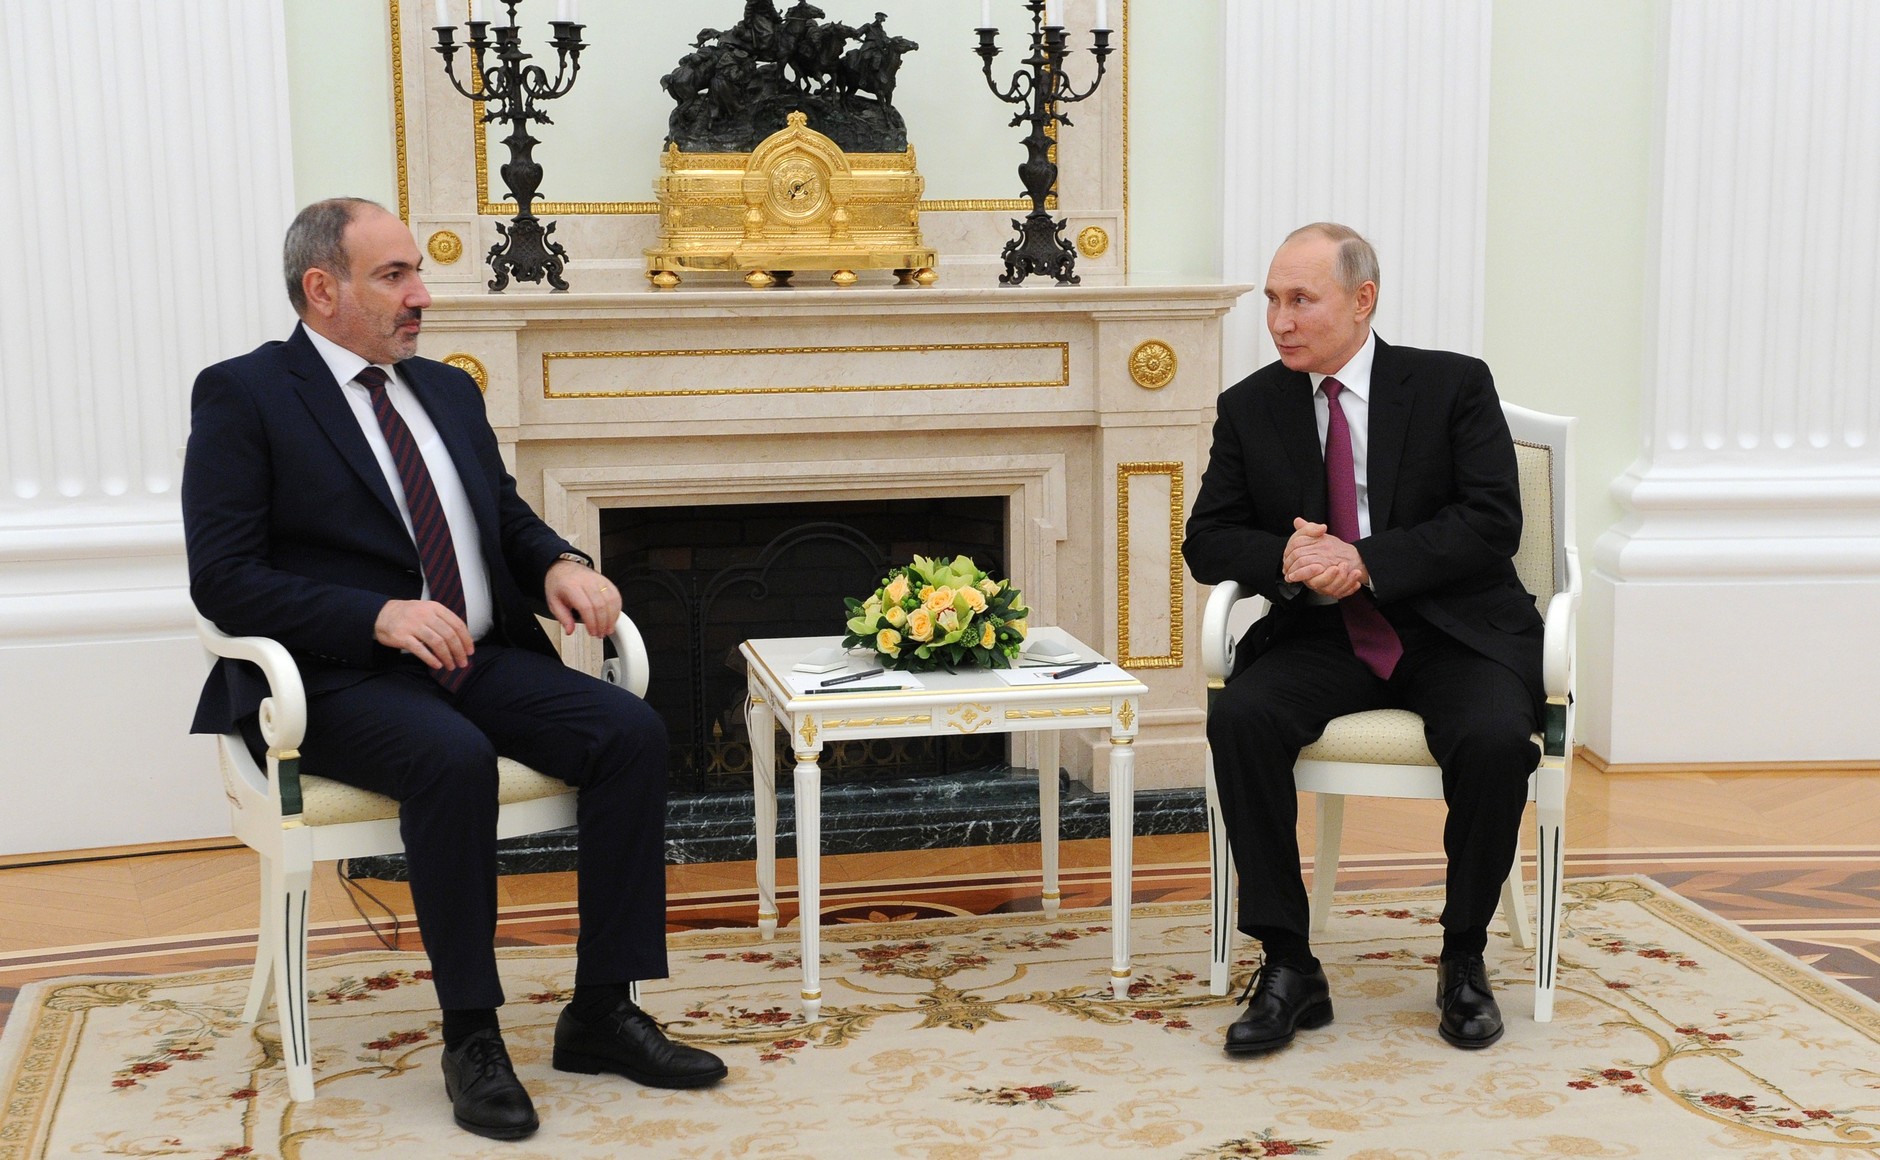 О чём говорили Путин и Пашинян